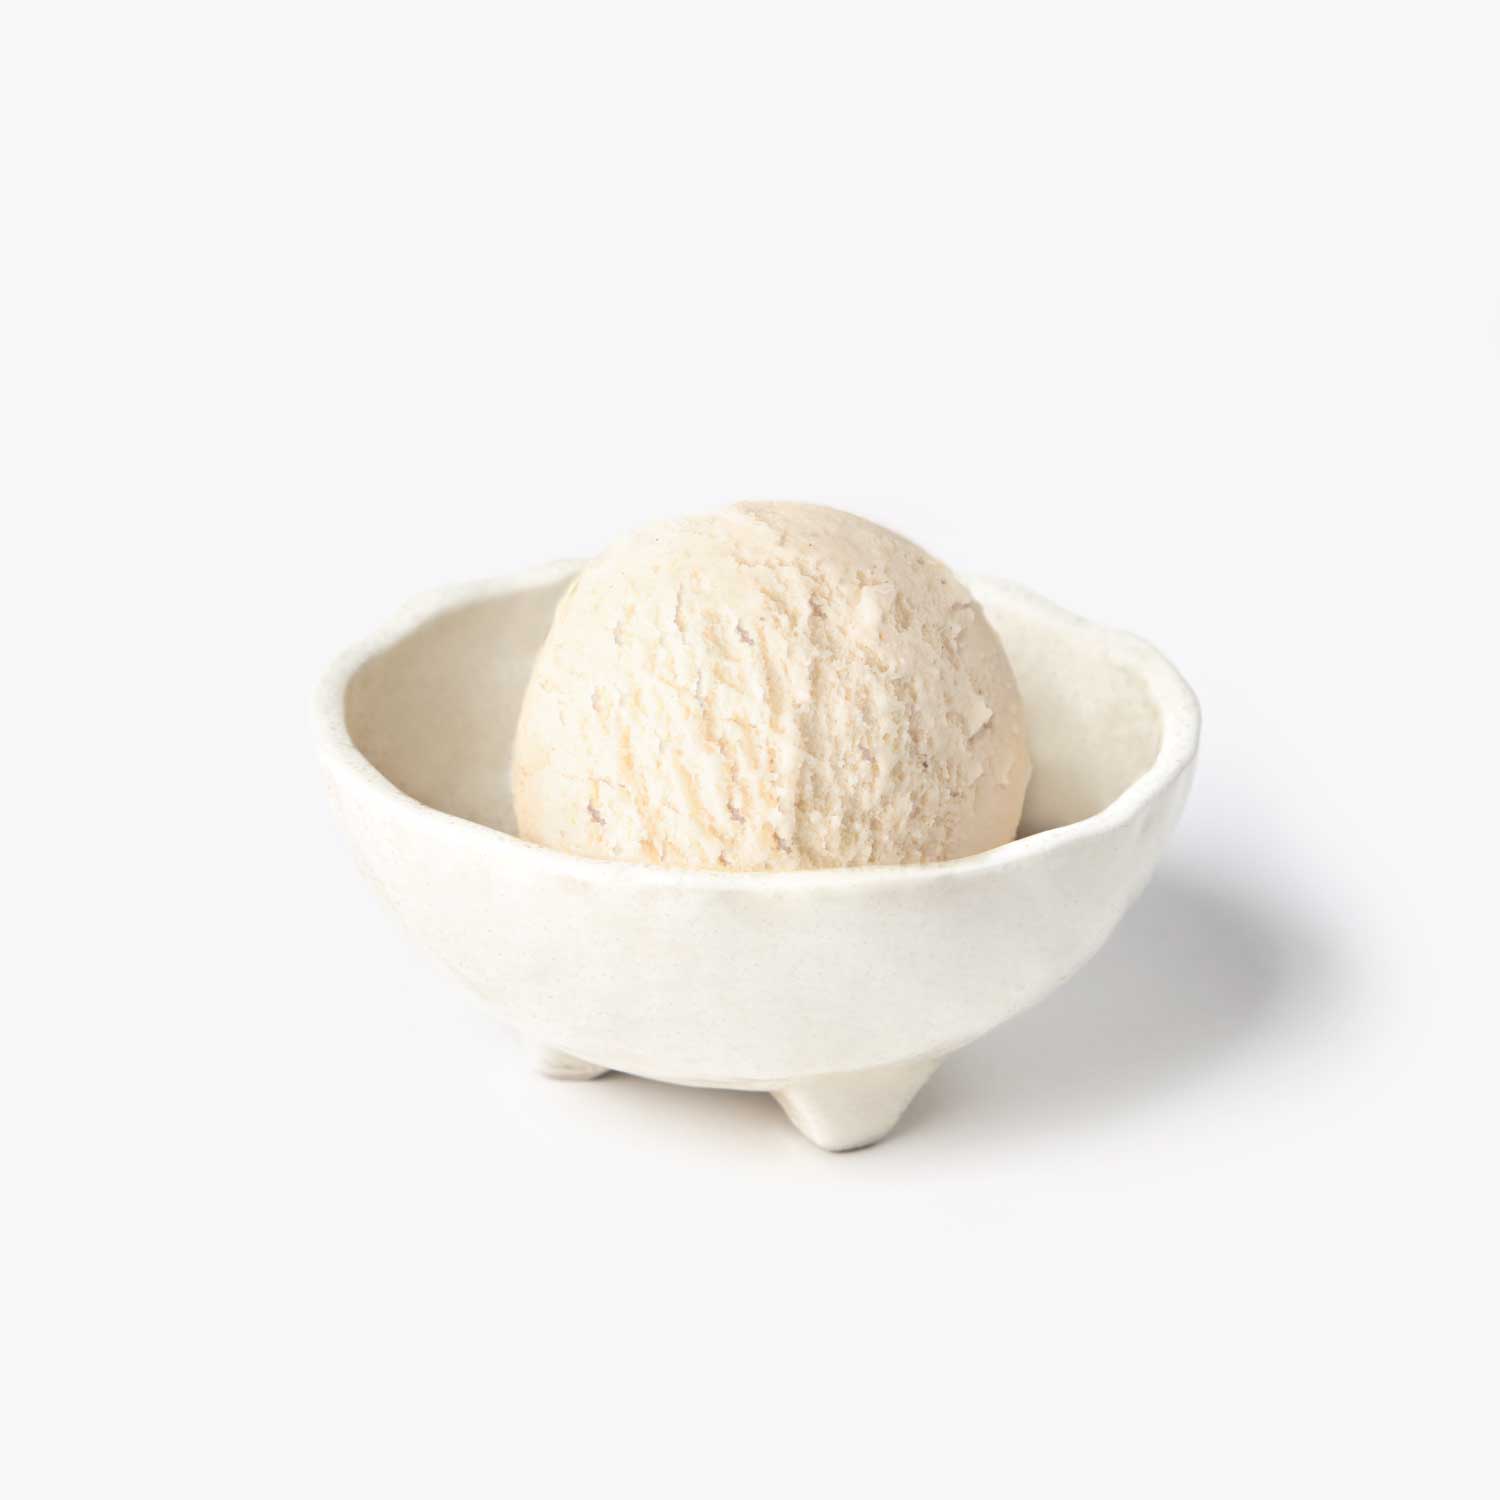 ไอศกรีม : SYNOVA วนิลาไอศกรีม 4 L. (แพน)